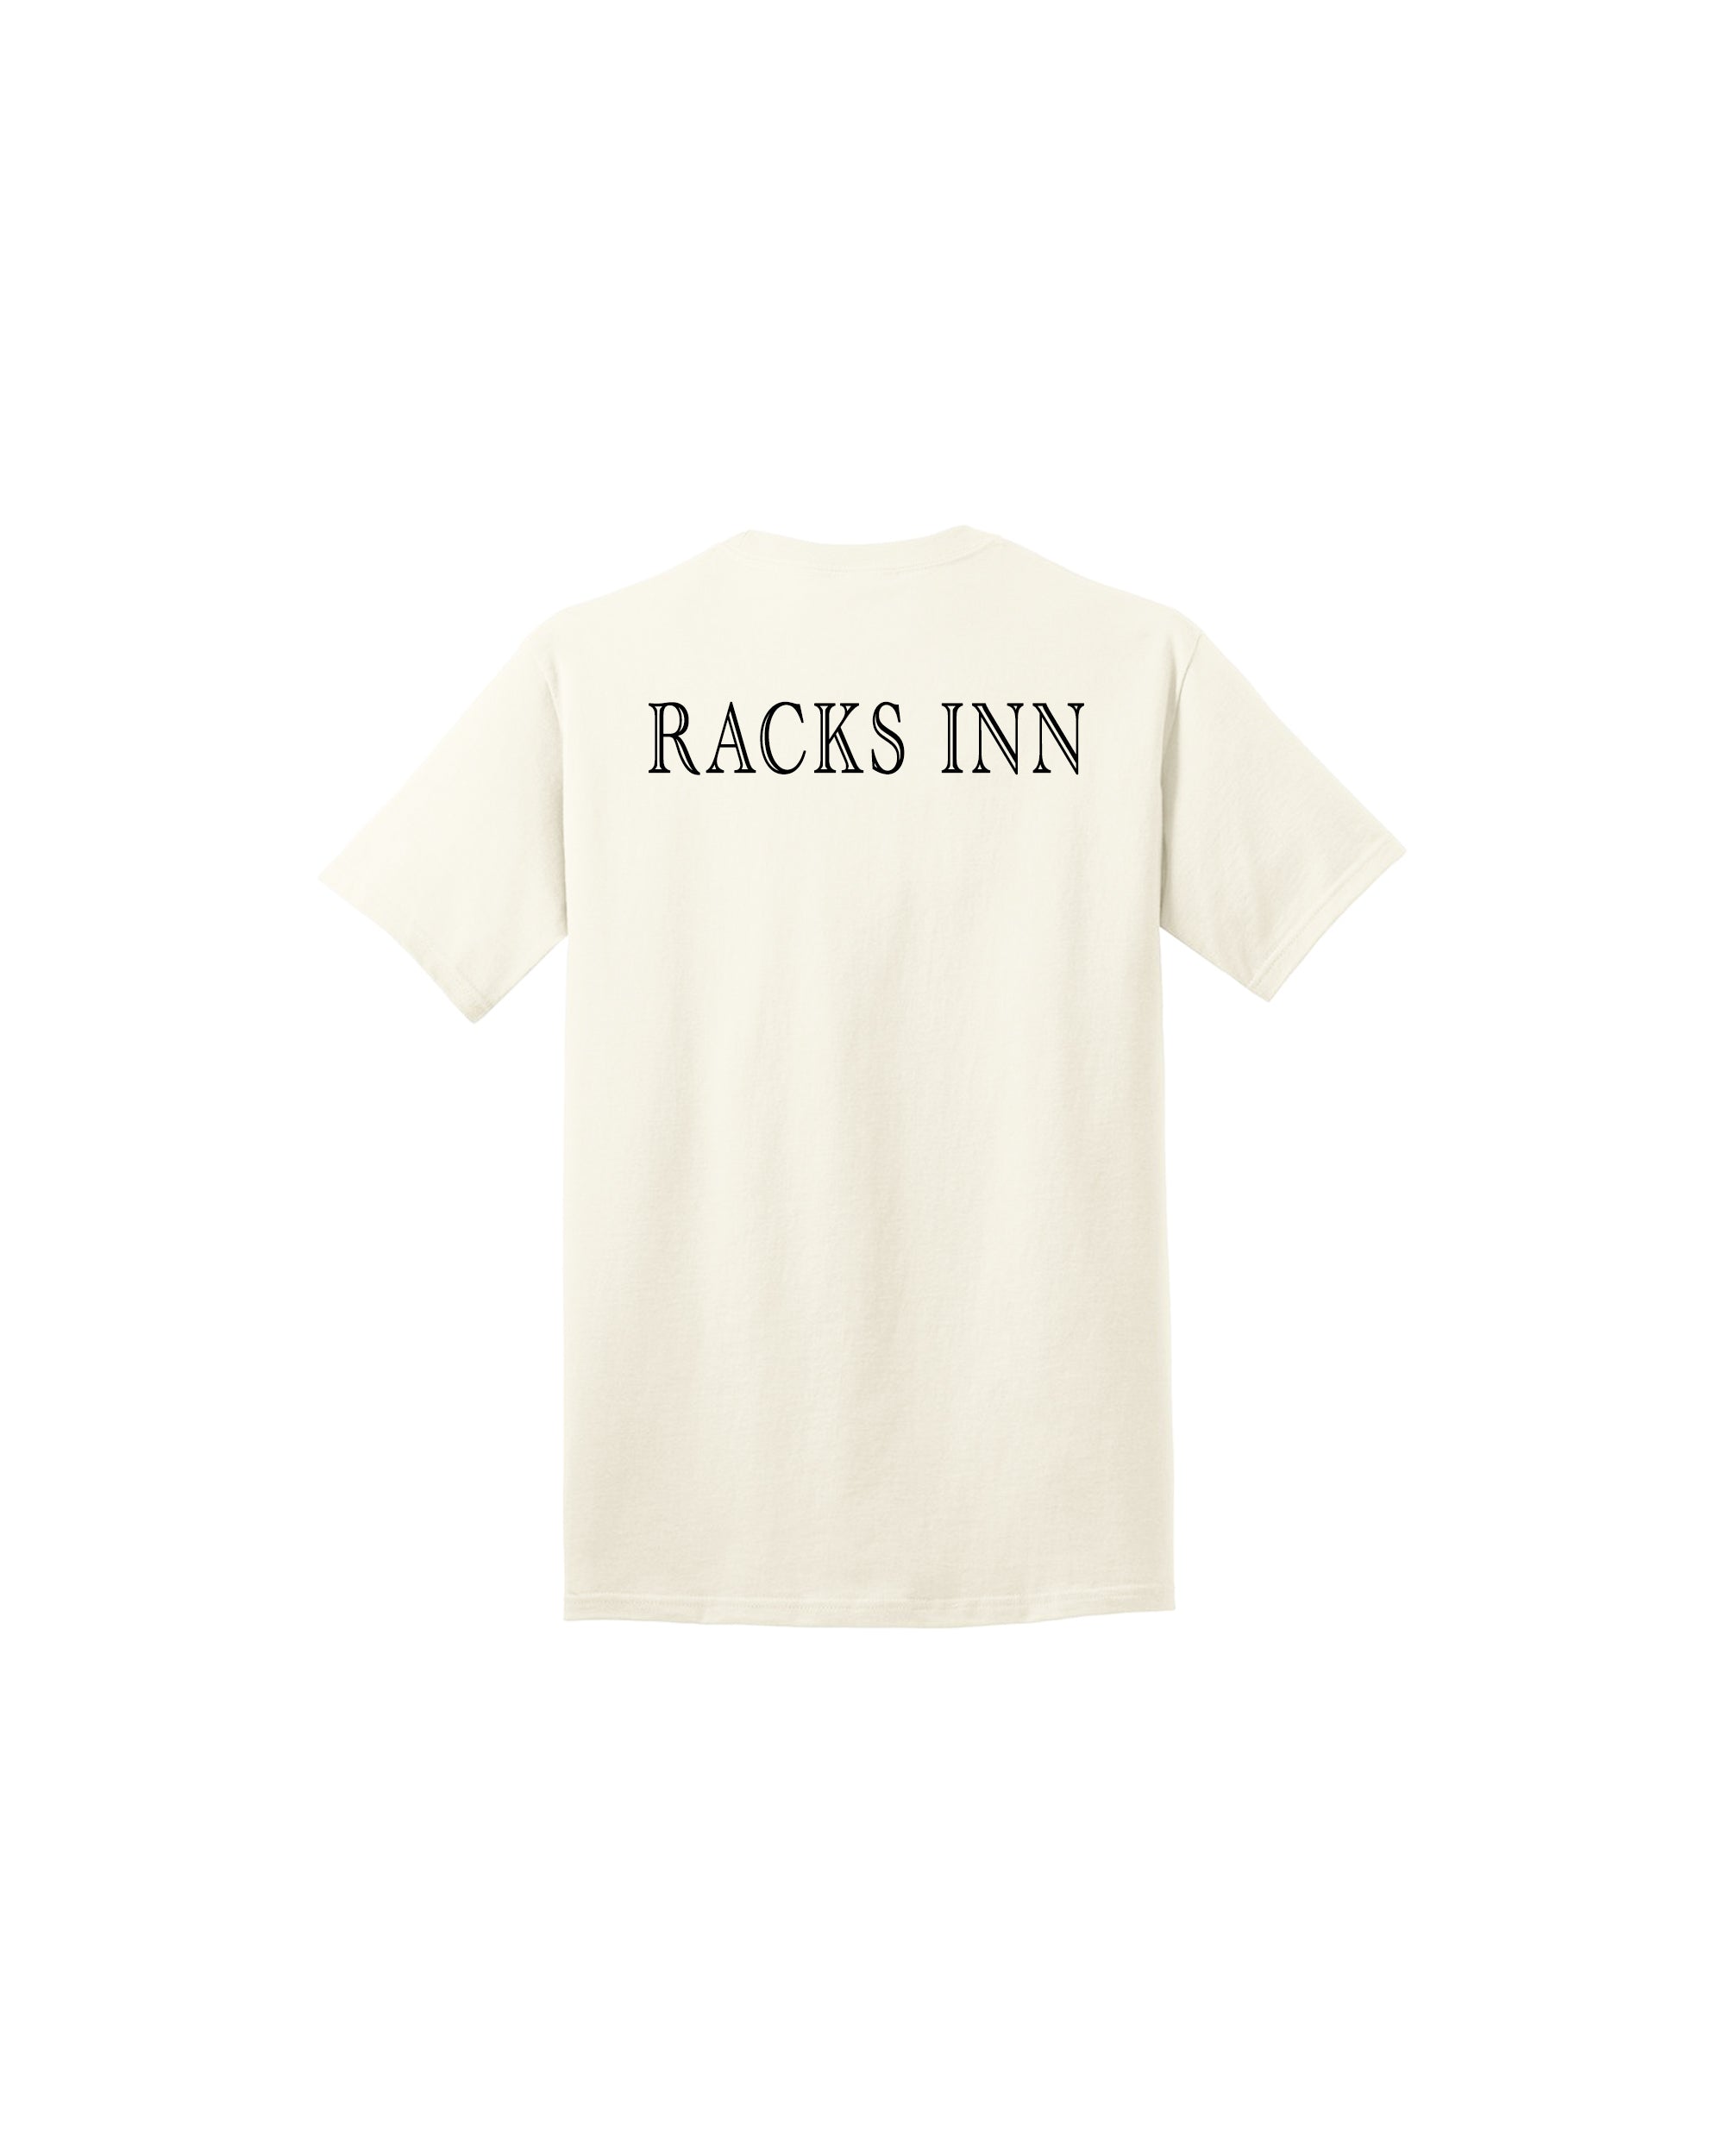 For The Love of Racks T-Shirt - Cream